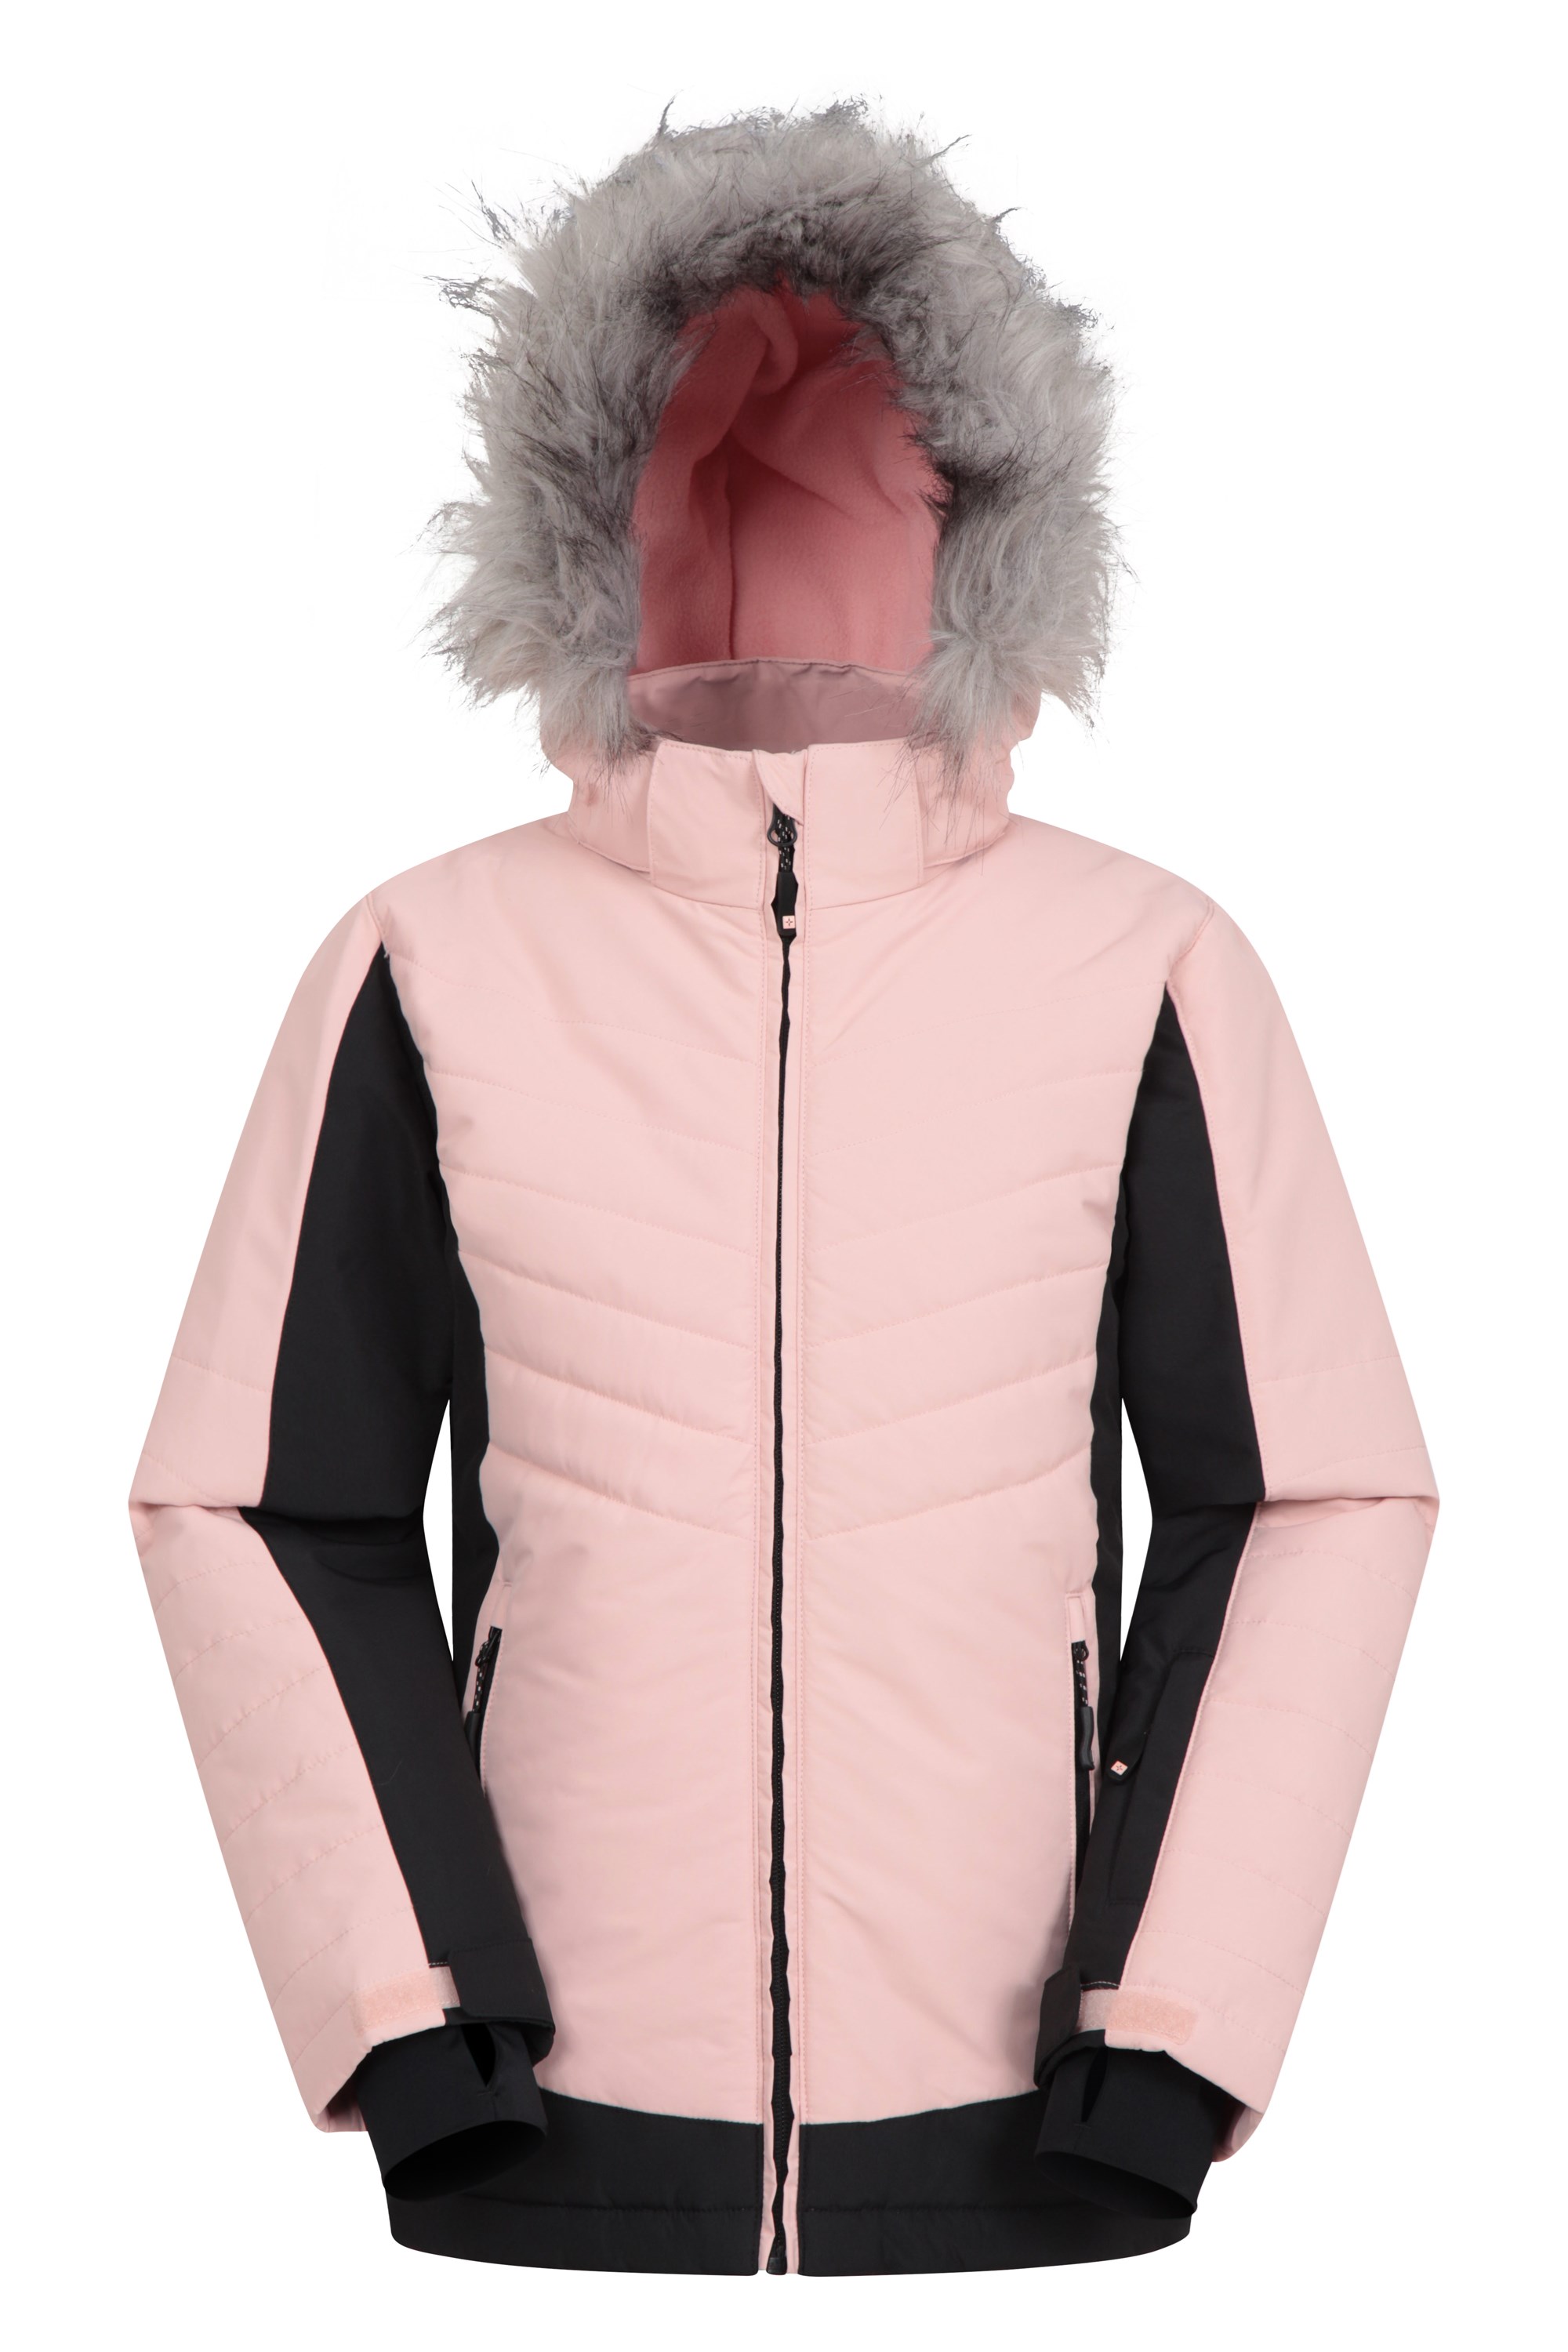 Aspen Youth Padded Ski Jacket - Pink